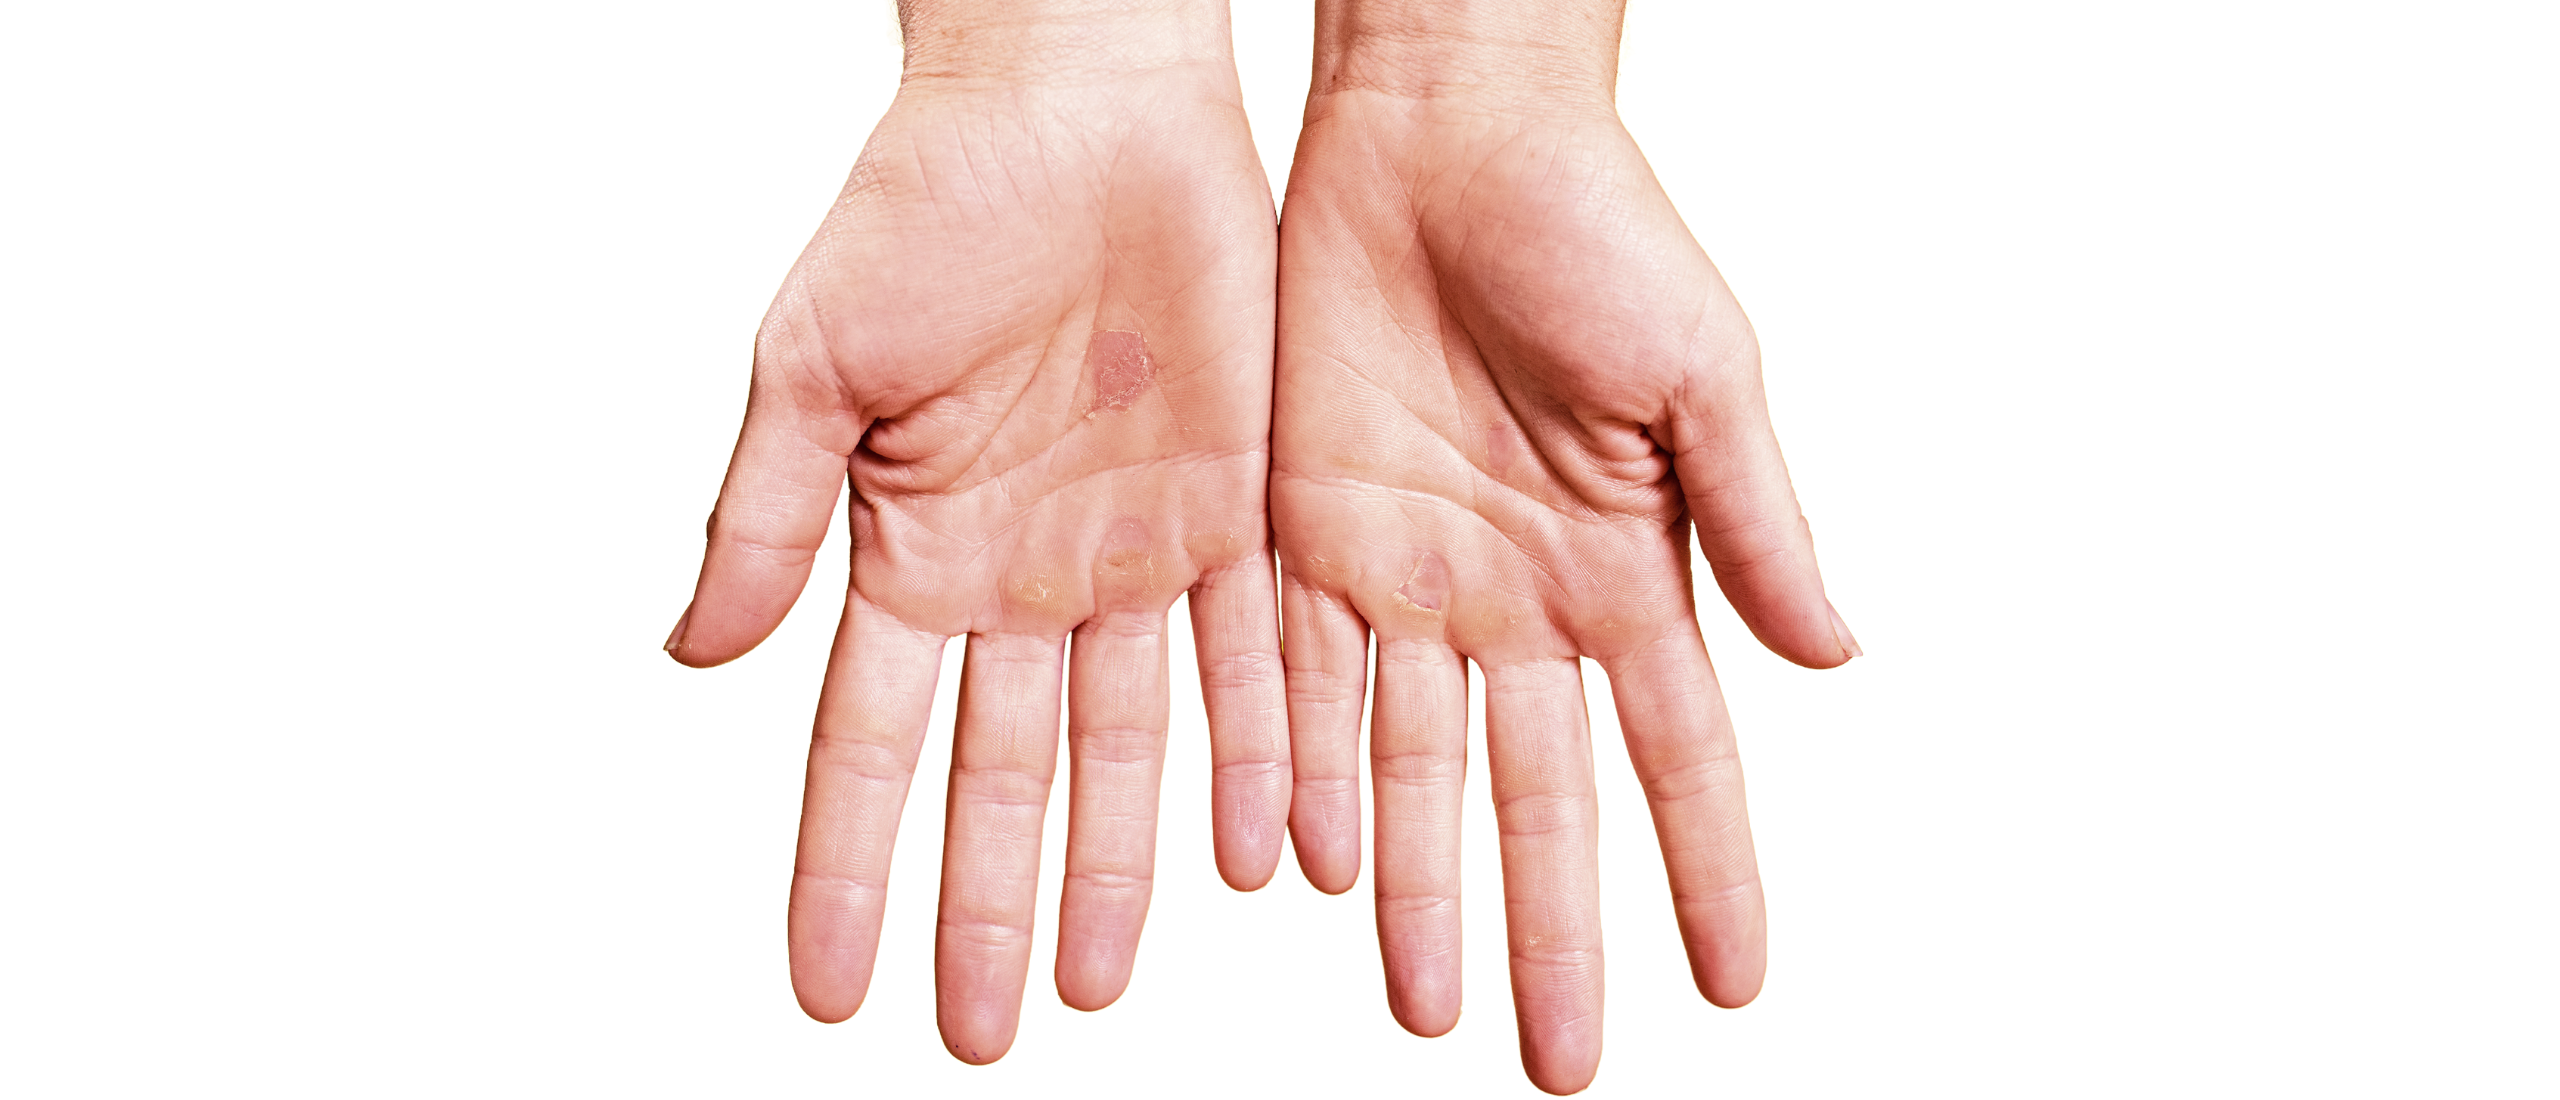 Eelt op handen: ruwe en harde handpalmen